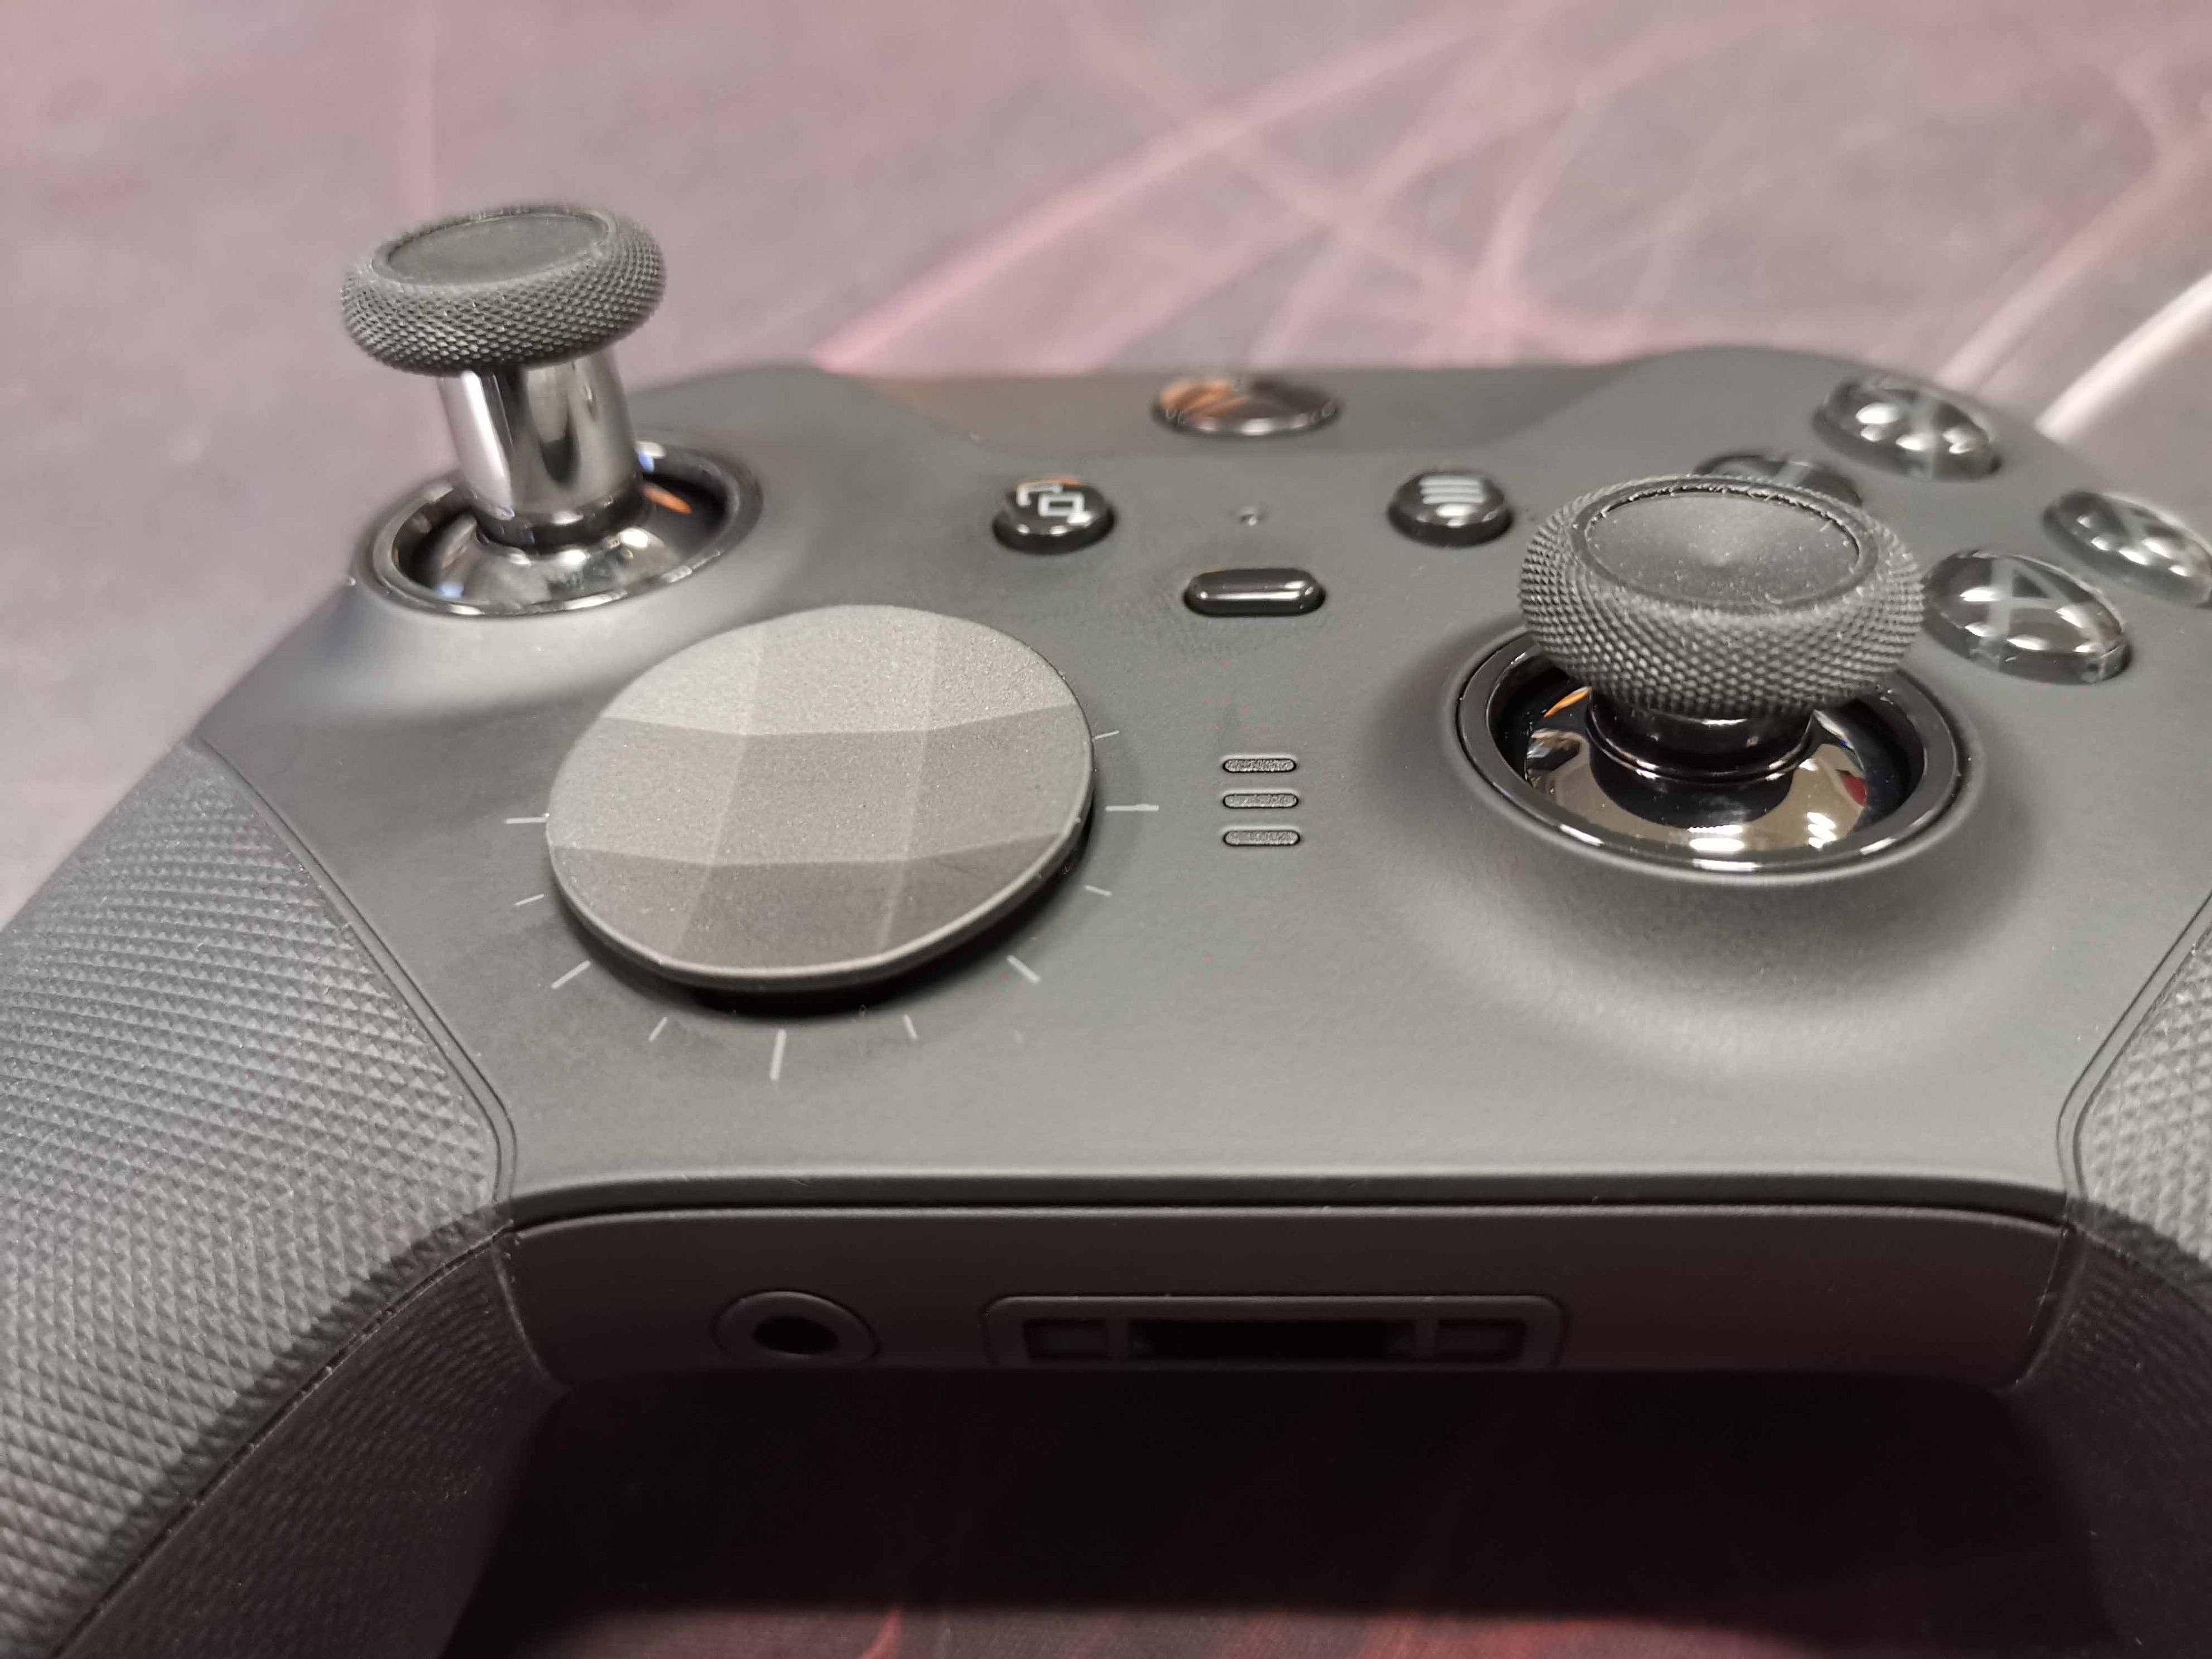 Análisis del mando Elite de Xbox One, un pad no apto para todos